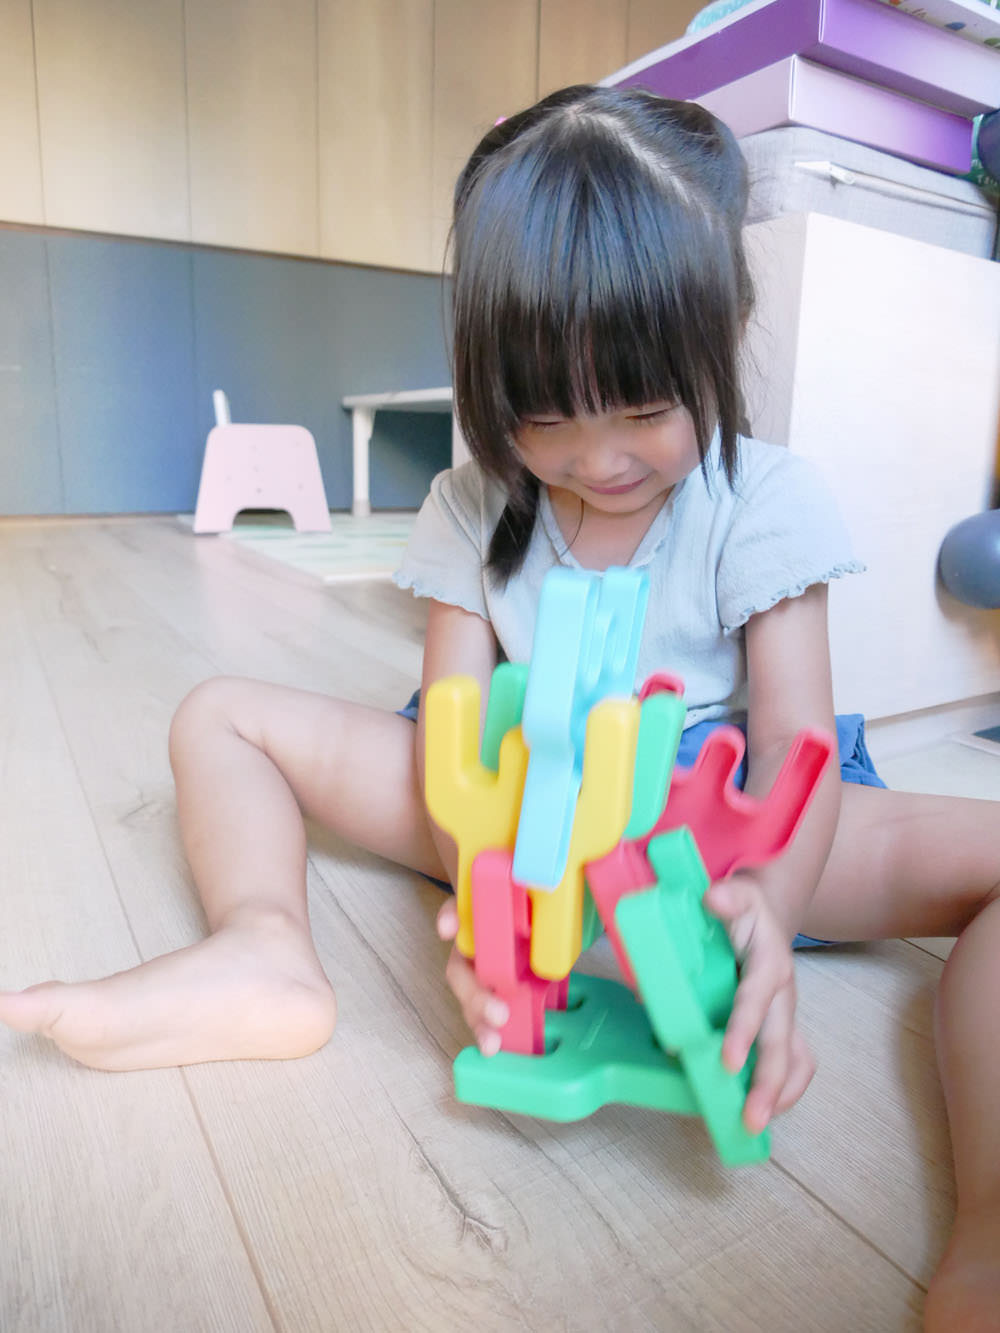 [啾團] WOOHOO-PIGGYBACKS Q比人軟積木建構片激發小孩的無限想想力(本次加開 大型搖搖軟積木/ 軟積木)